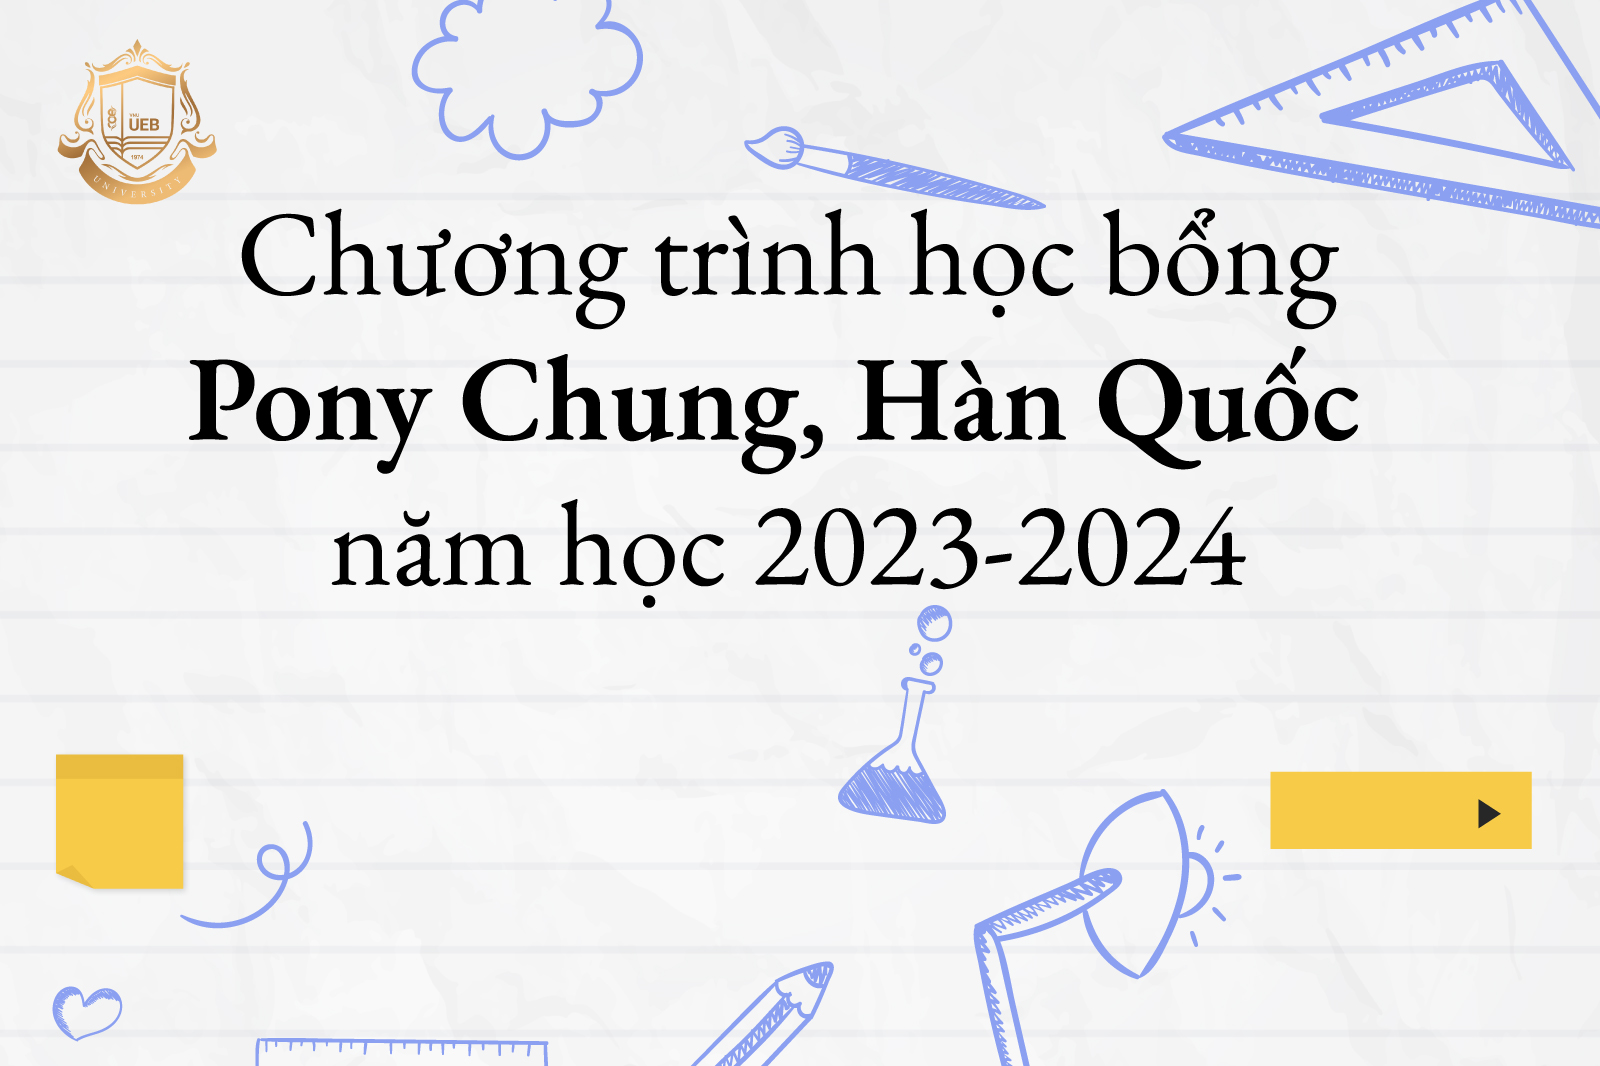 Chương trình học bổng Pony Chung, Hàn Quốc năm học 2023-2024